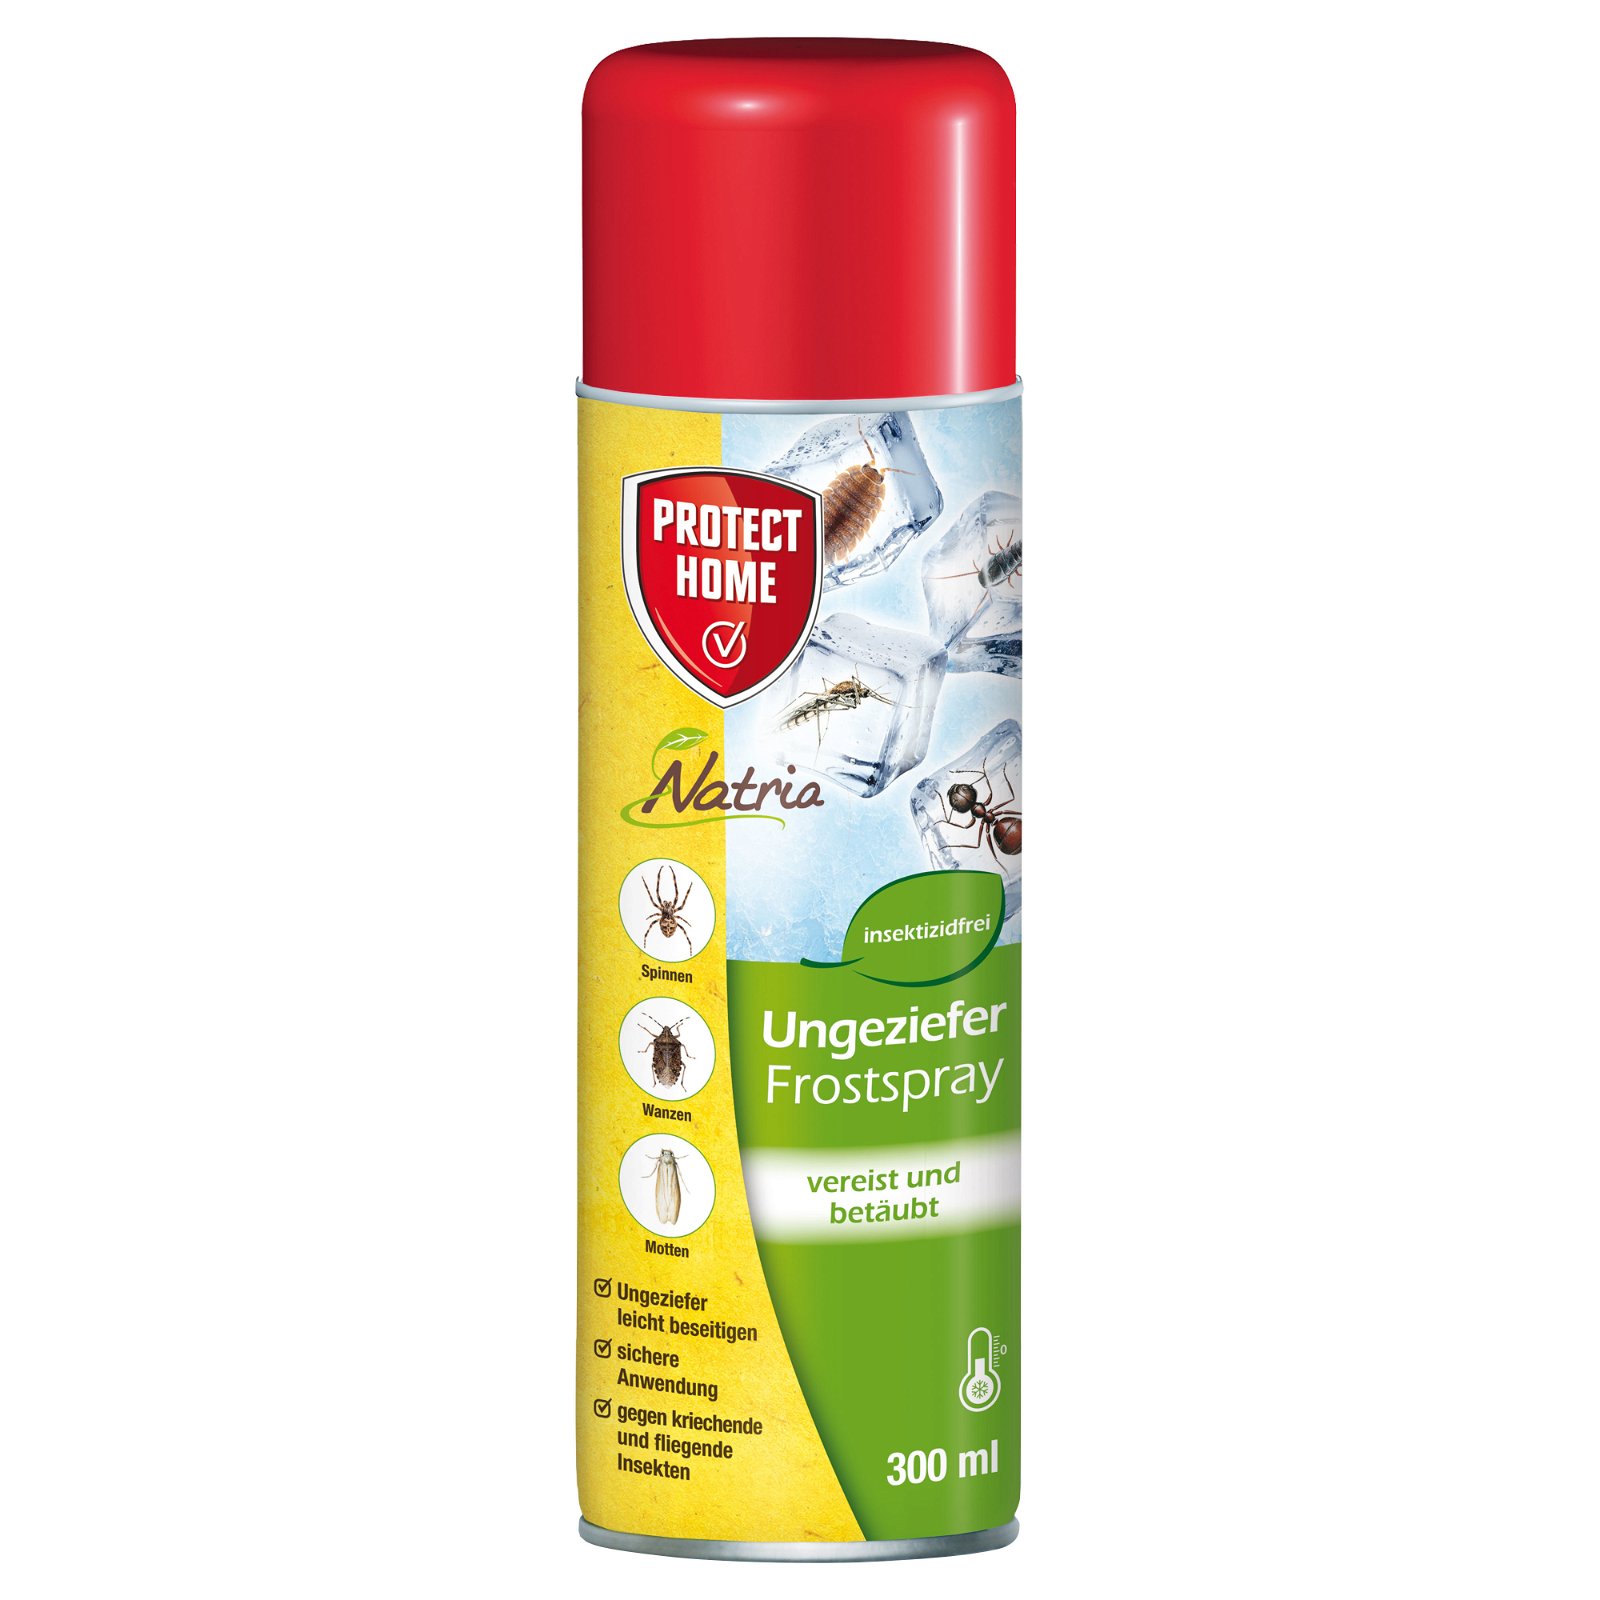 Ungeziefer-Frostspray, 300 ml